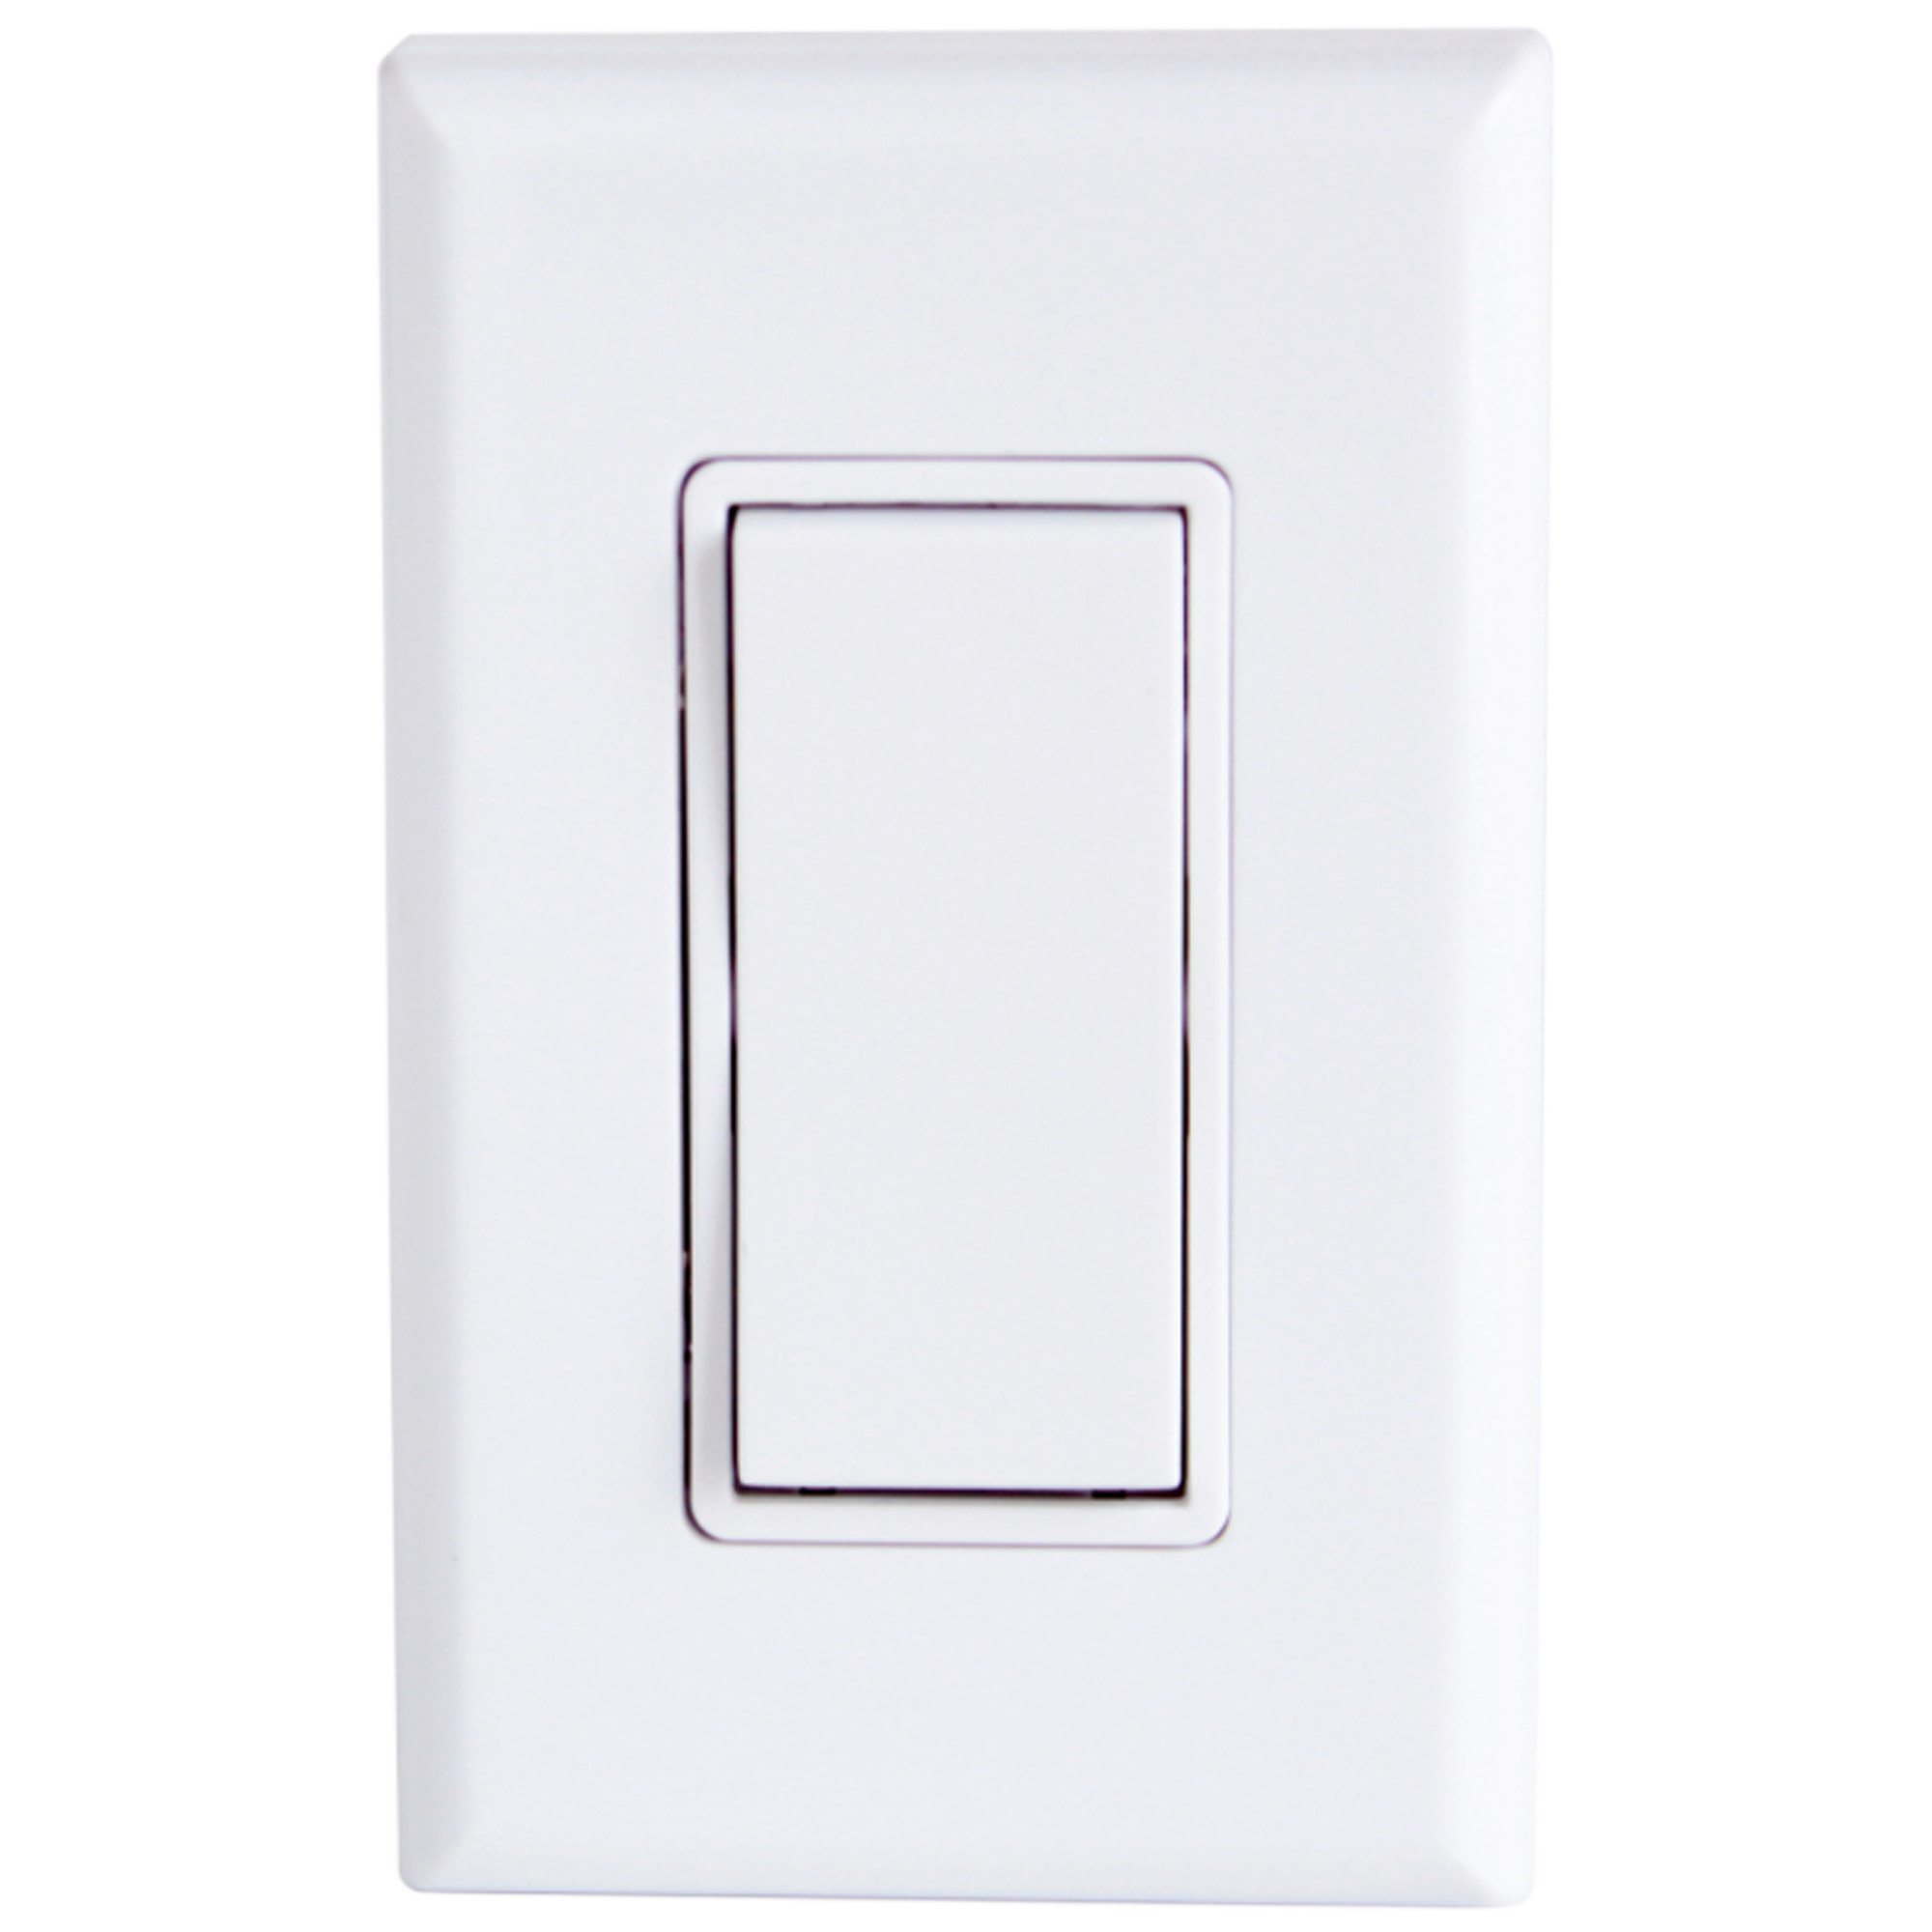 wireless light switch white single rocker